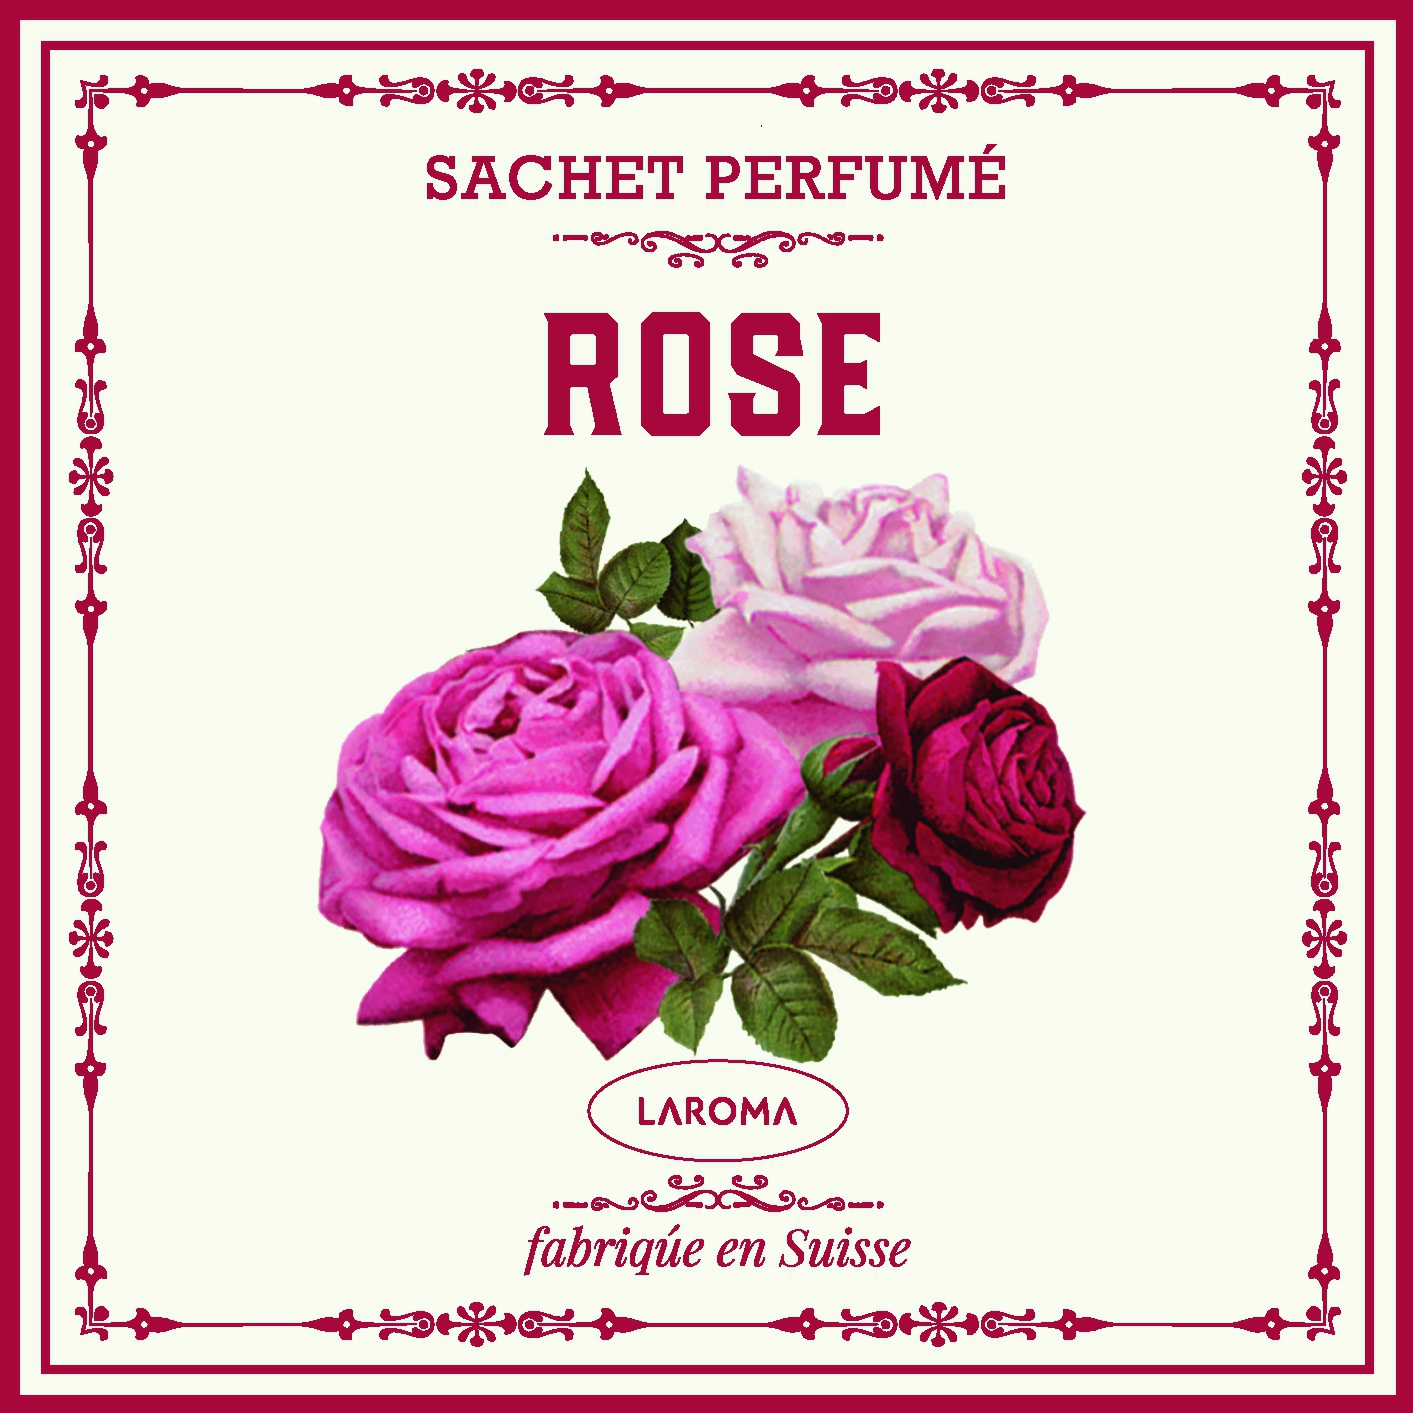 Rose bouquet Sachet parfumé e120x120mm